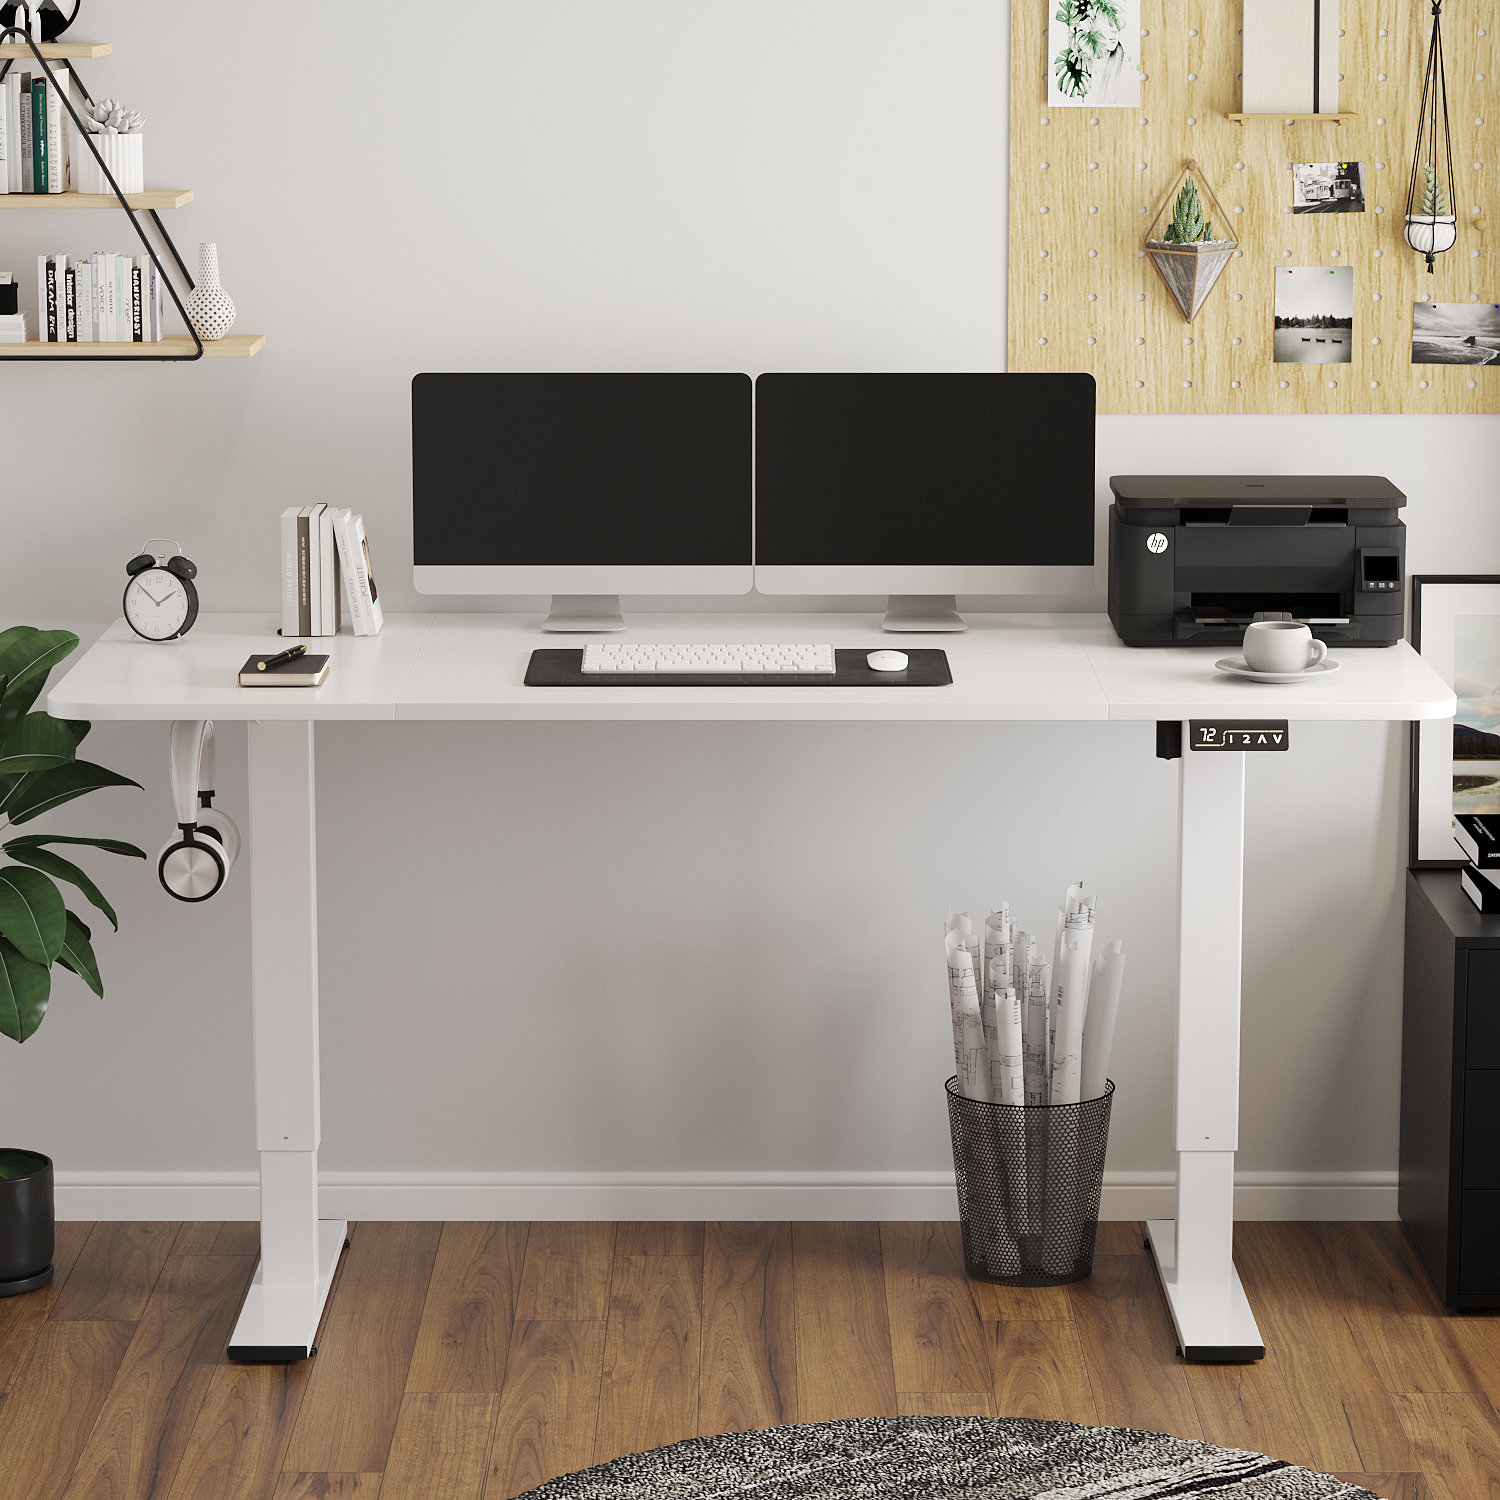 https://assets.wfcdn.com/im/61607651/compr-r85/2382/238232959/putnam-height-adjustable-standing-desk.jpg